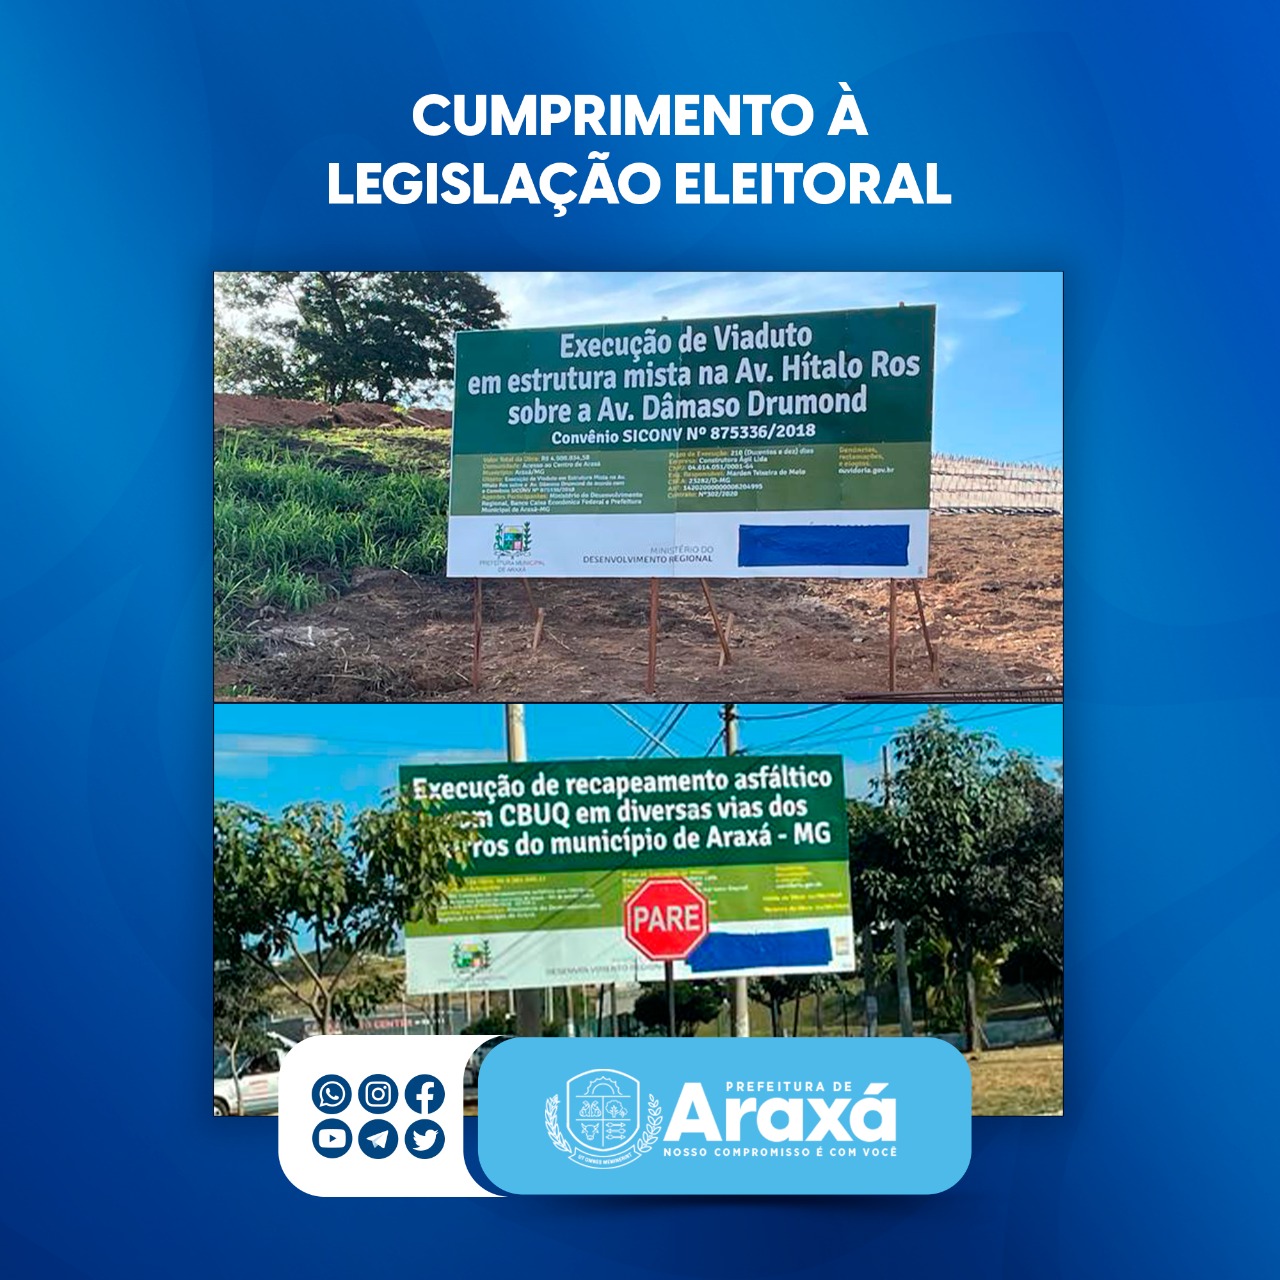 Prefeitura de Araxá comunica que está cumprindo a Lei Nº 9.504/97